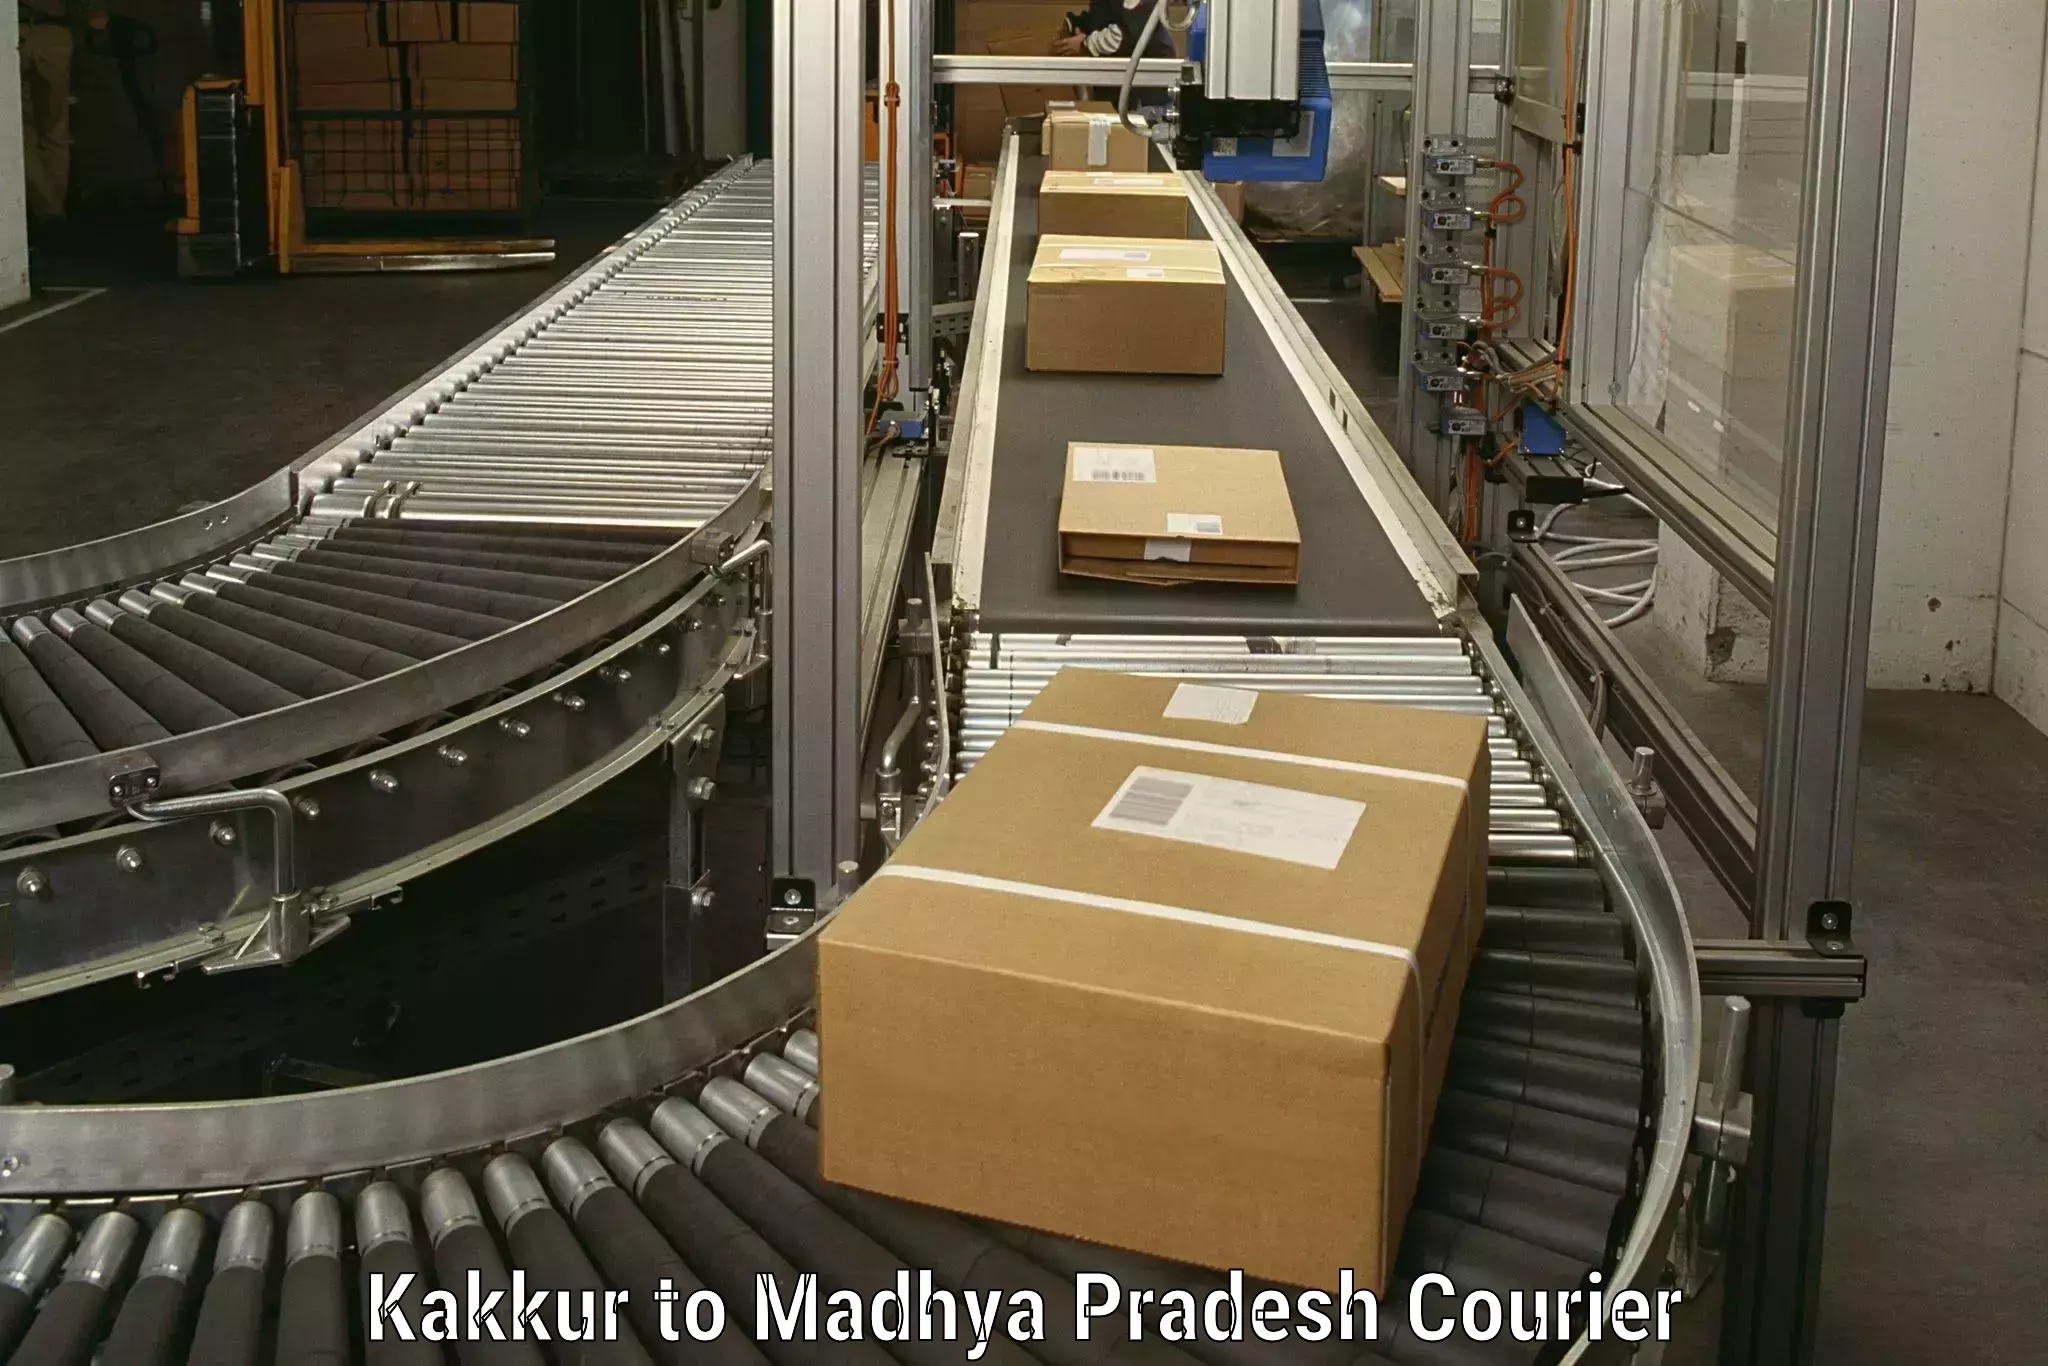 Efficient household movers Kakkur to Dindori